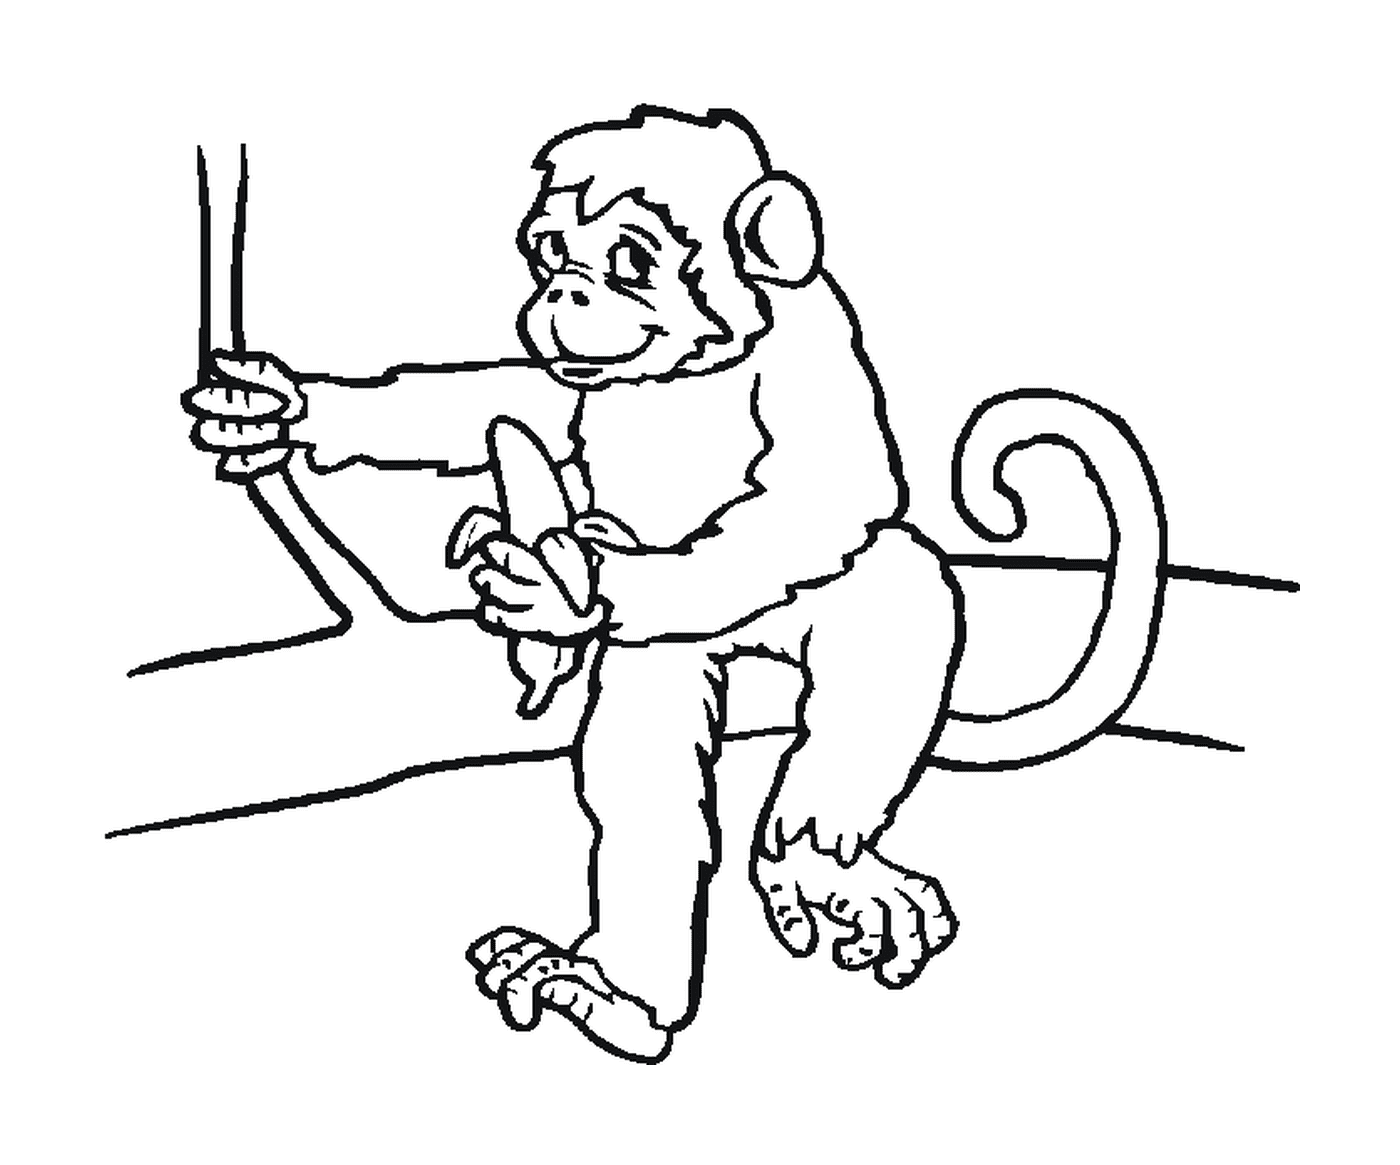  猴子与香蕉坐在一起 